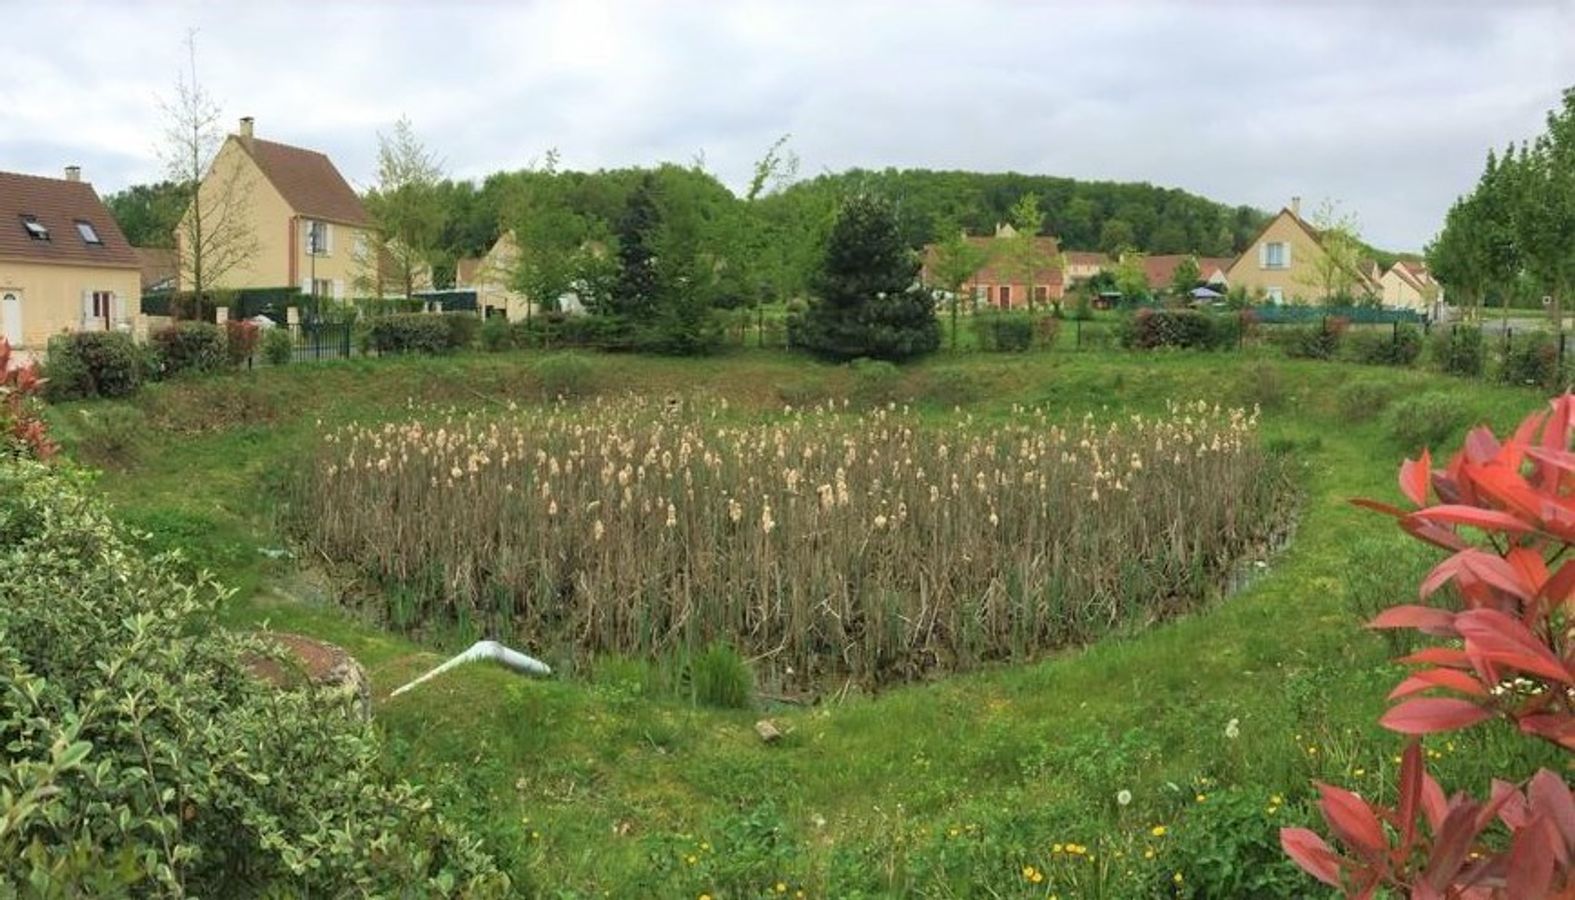 ☔💦Objectif 0 rejet d'eau de pluie dans le réseau unitaire : l'exemple de Crépy-en-Valois